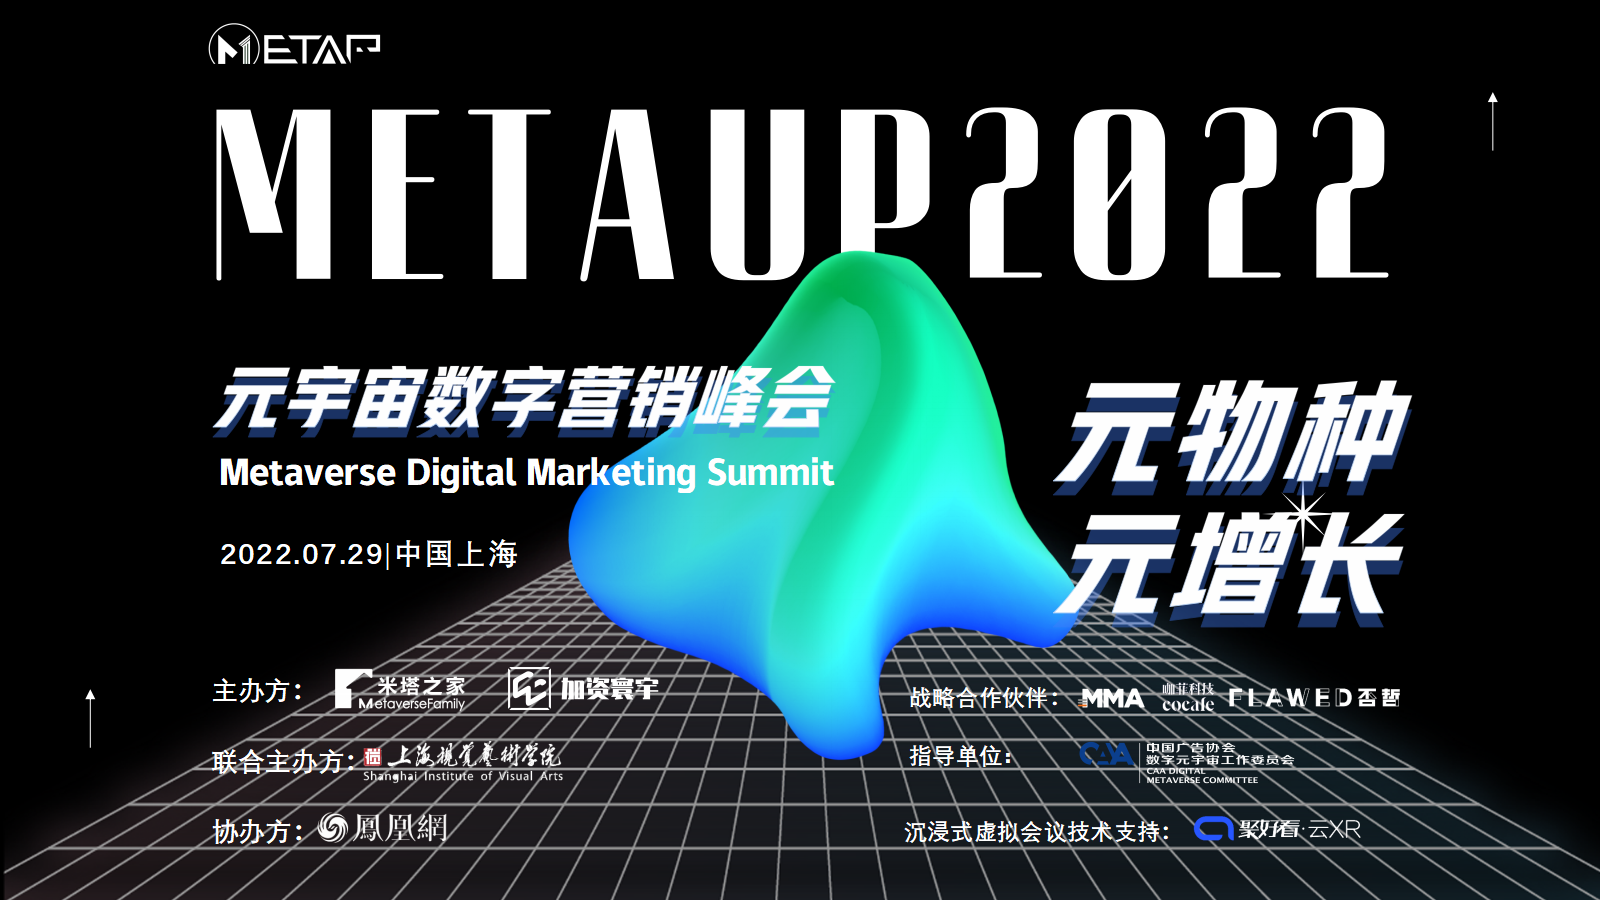 MetaUp2022元宇宙数字营销峰会